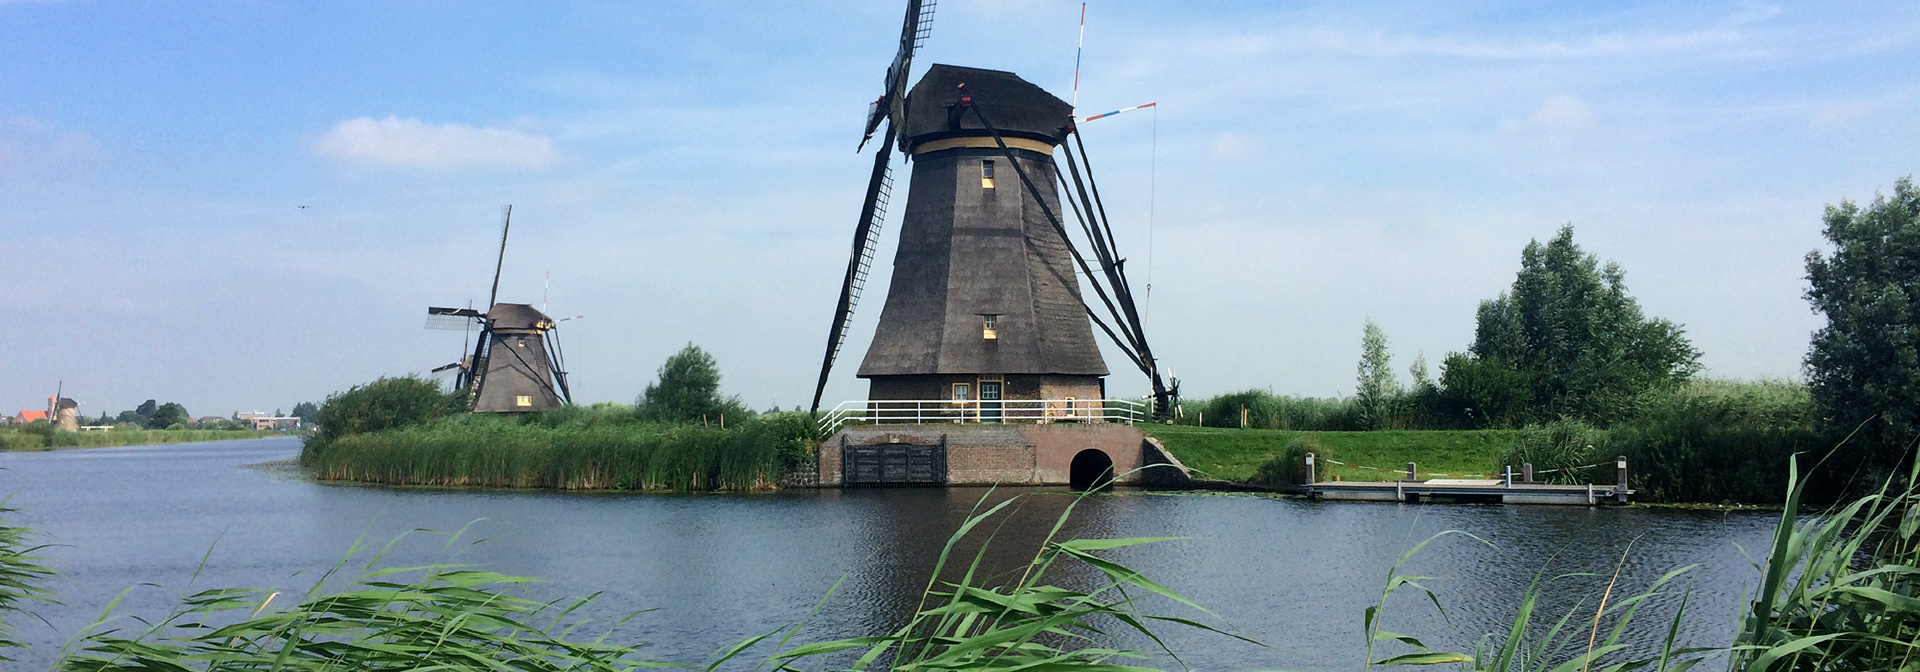 Belgium & Netherlands Bike & Barge Tour - Bruges to Amsterdam